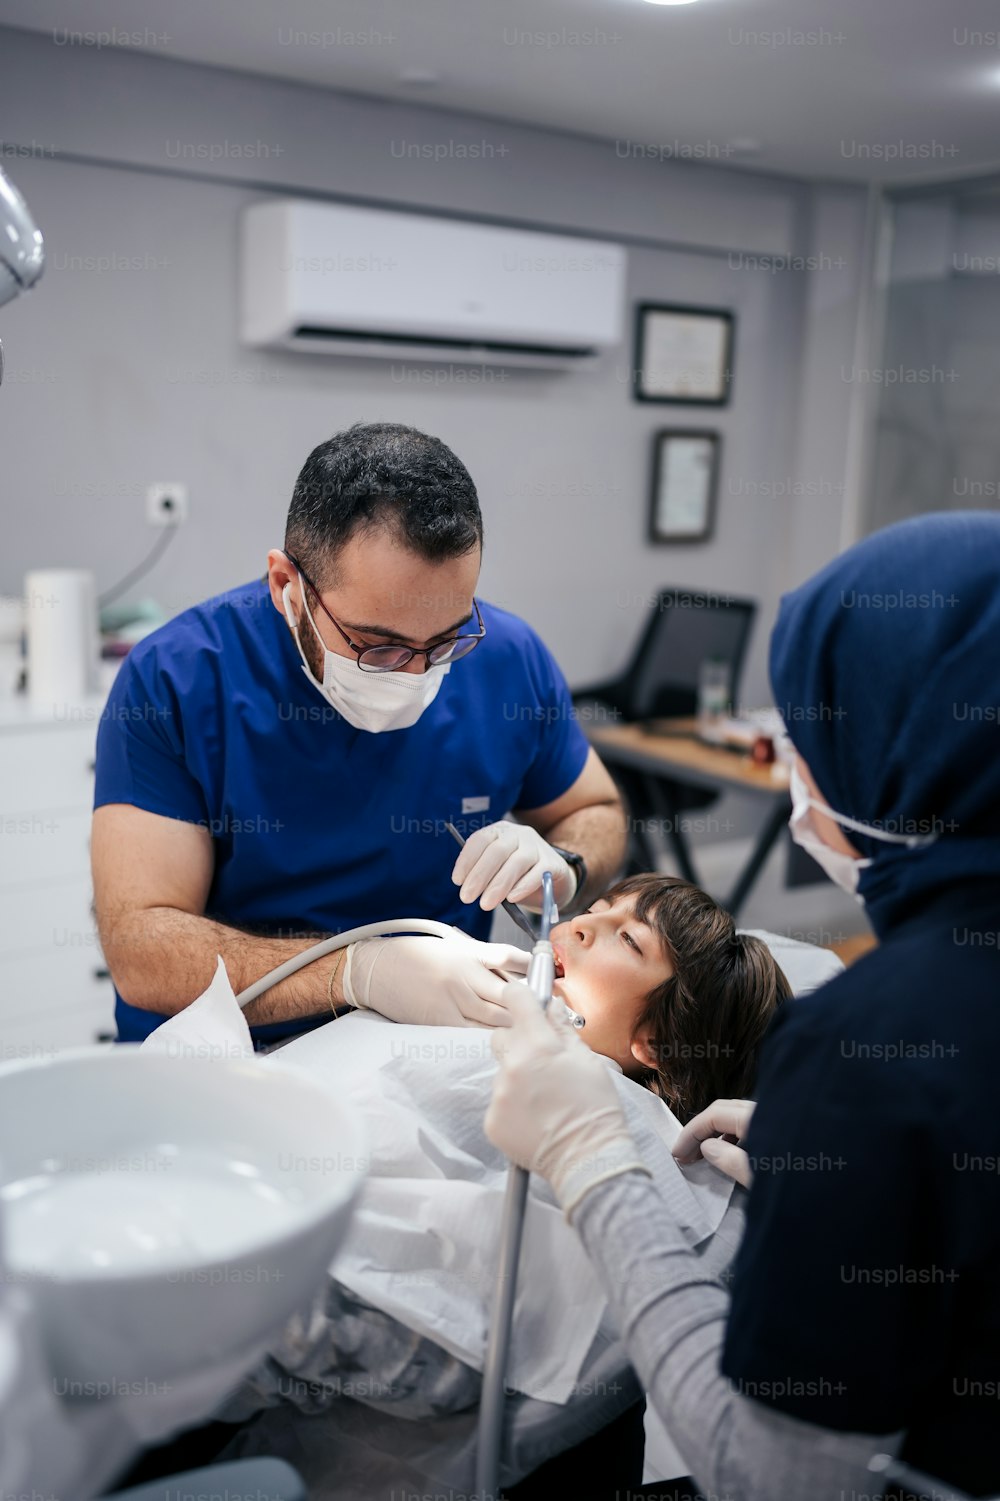 Una donna che si fa controllare i denti da un dentista